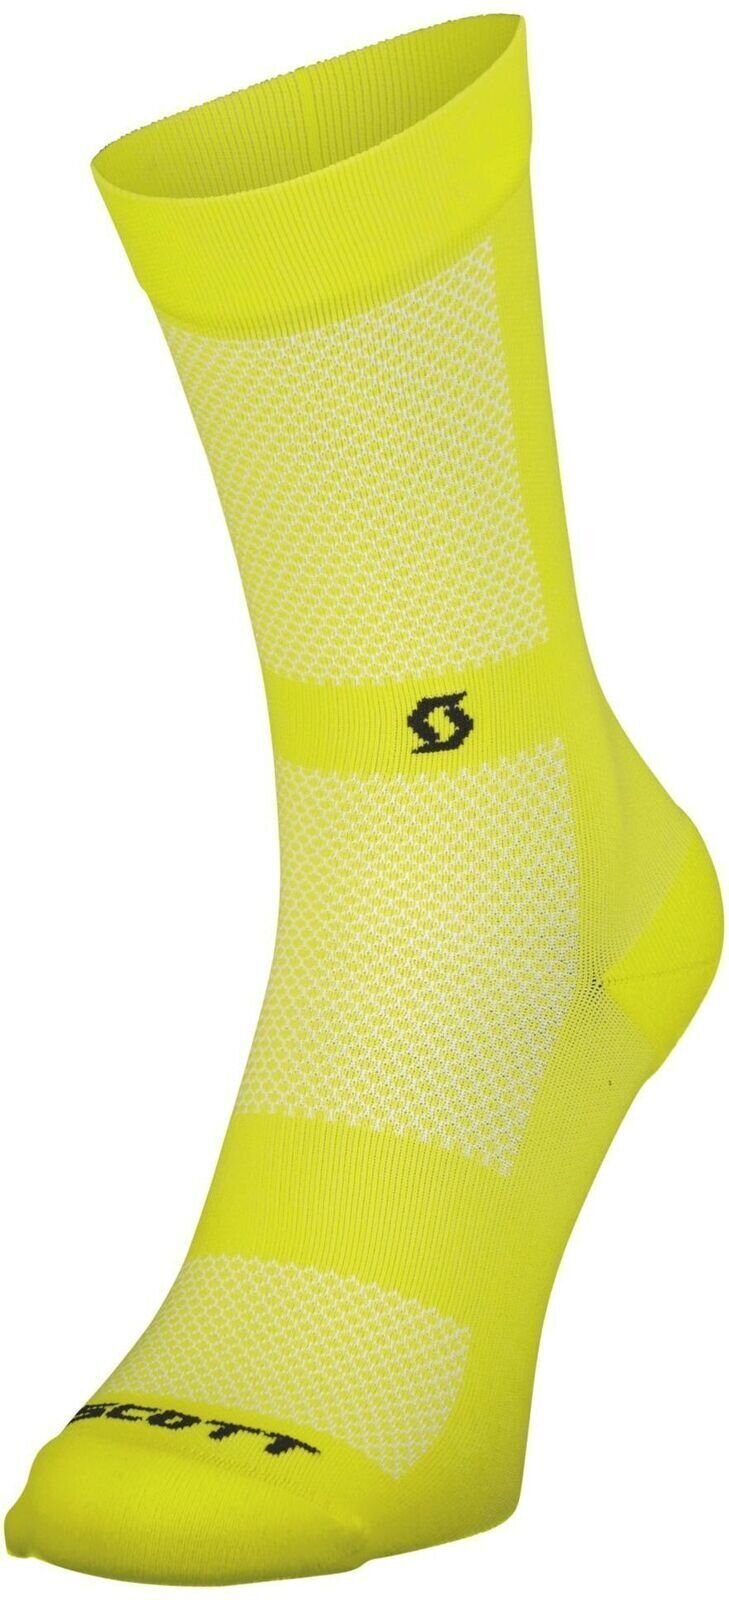 Biciklistički čarape Scott Performance No Shortcuts Crew Socks Sulphur Yellow/Black 39-41 Biciklistički čarape